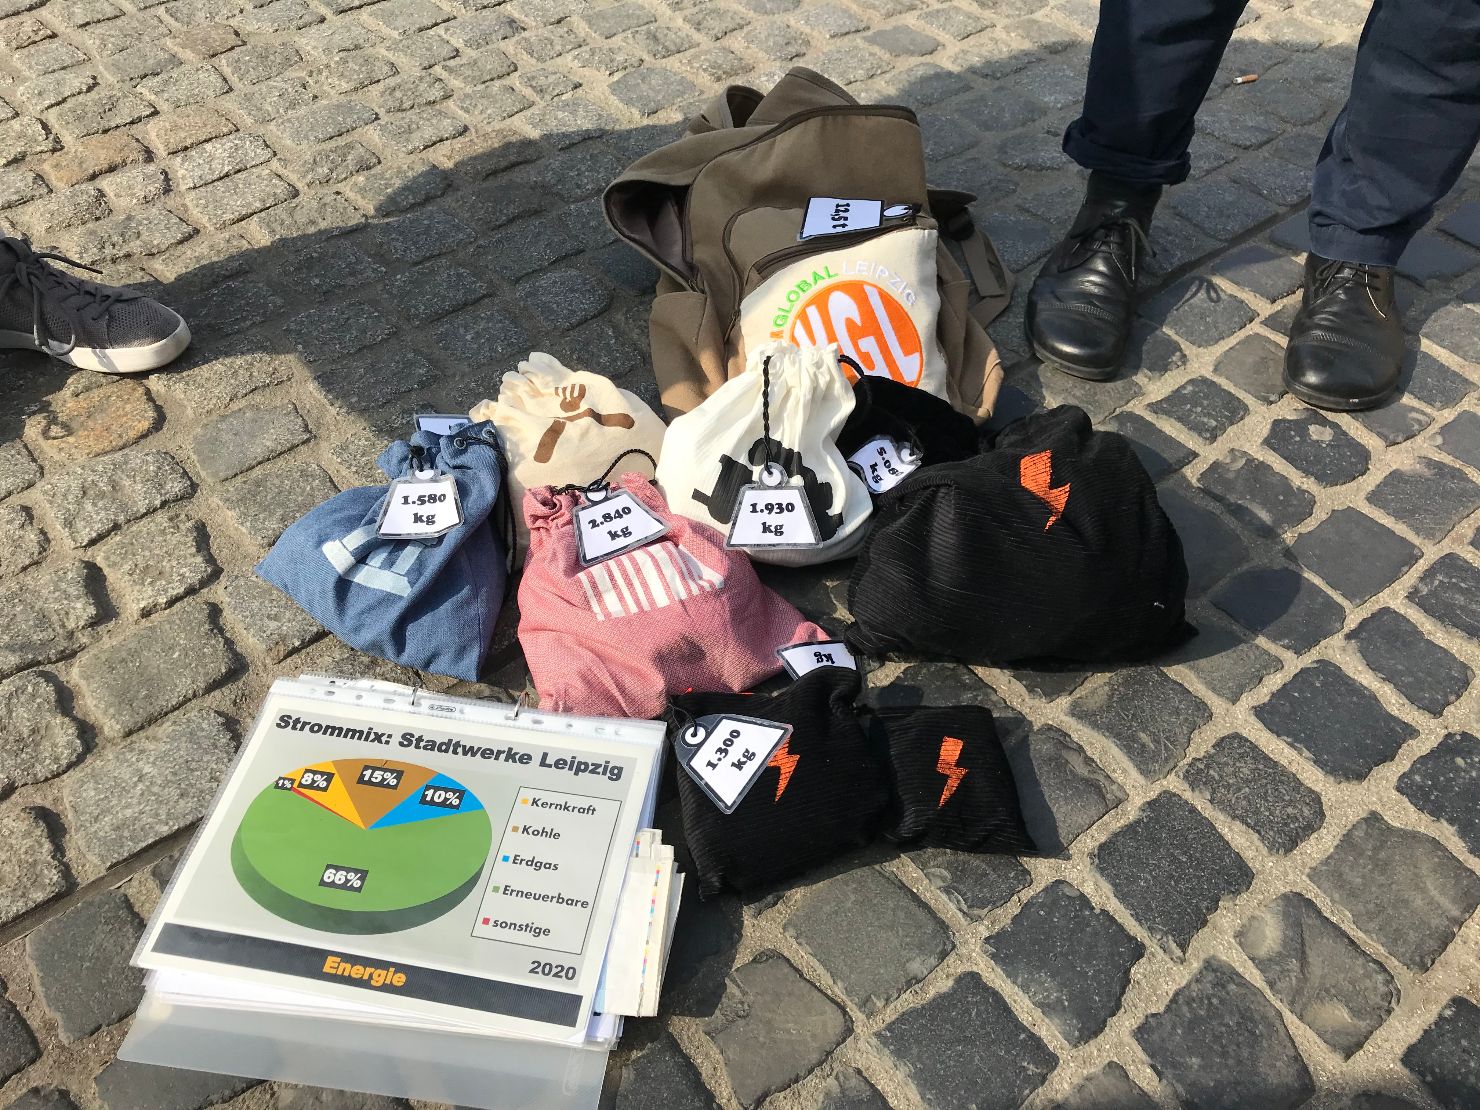   Schweres Gepäck | Klimarundgänge durch Leipzig schaffen Bewusstsein  